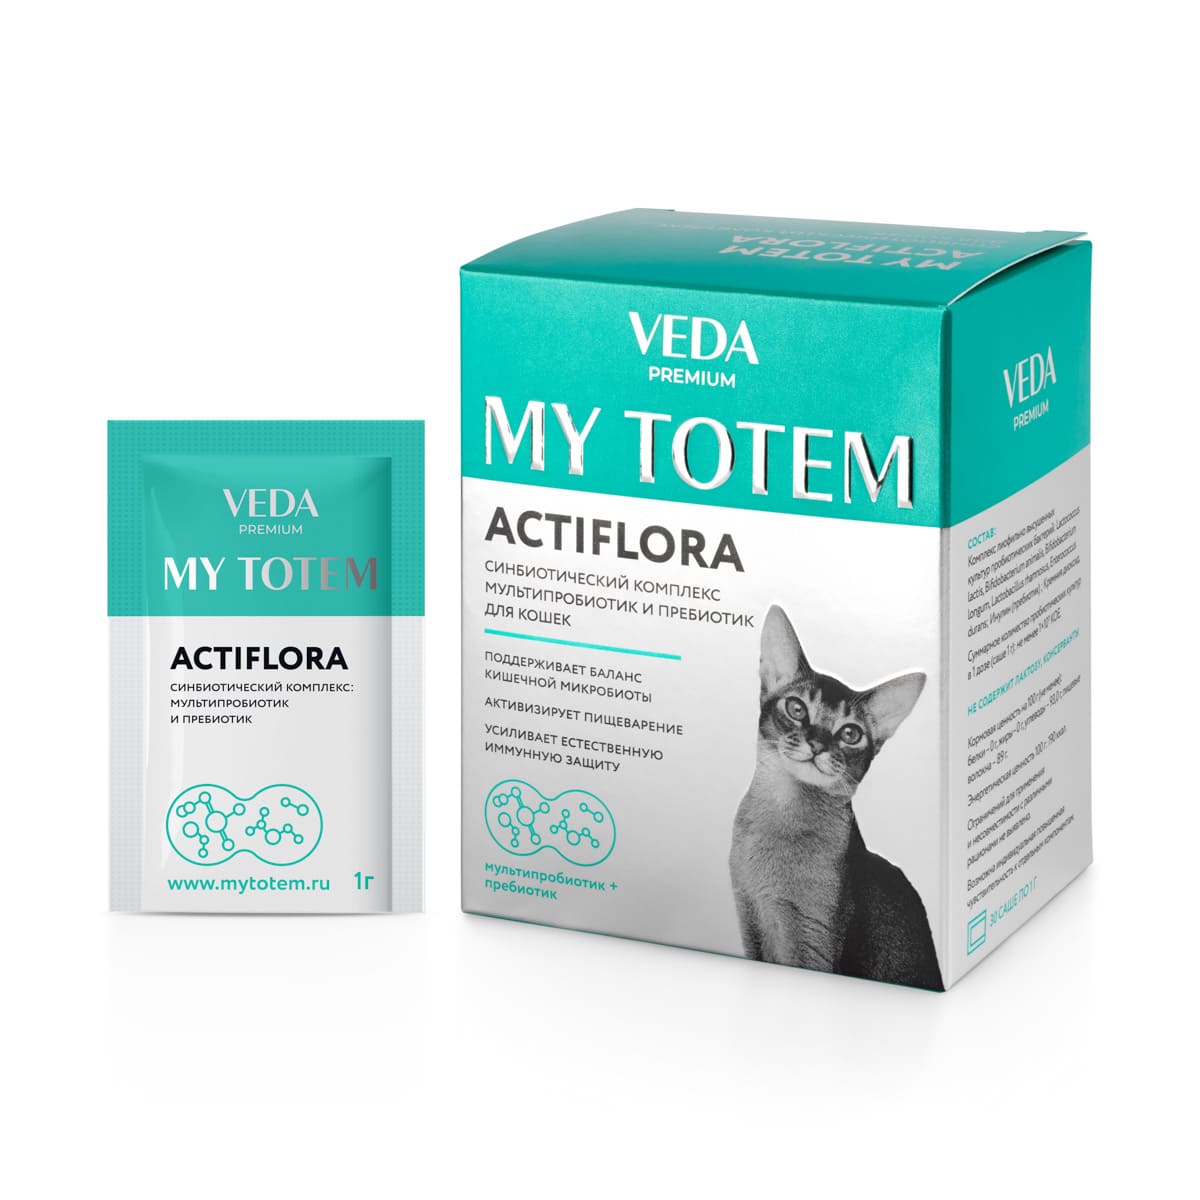 синбиотический комплекс "my totem actiflora"(актифлора) для кошек